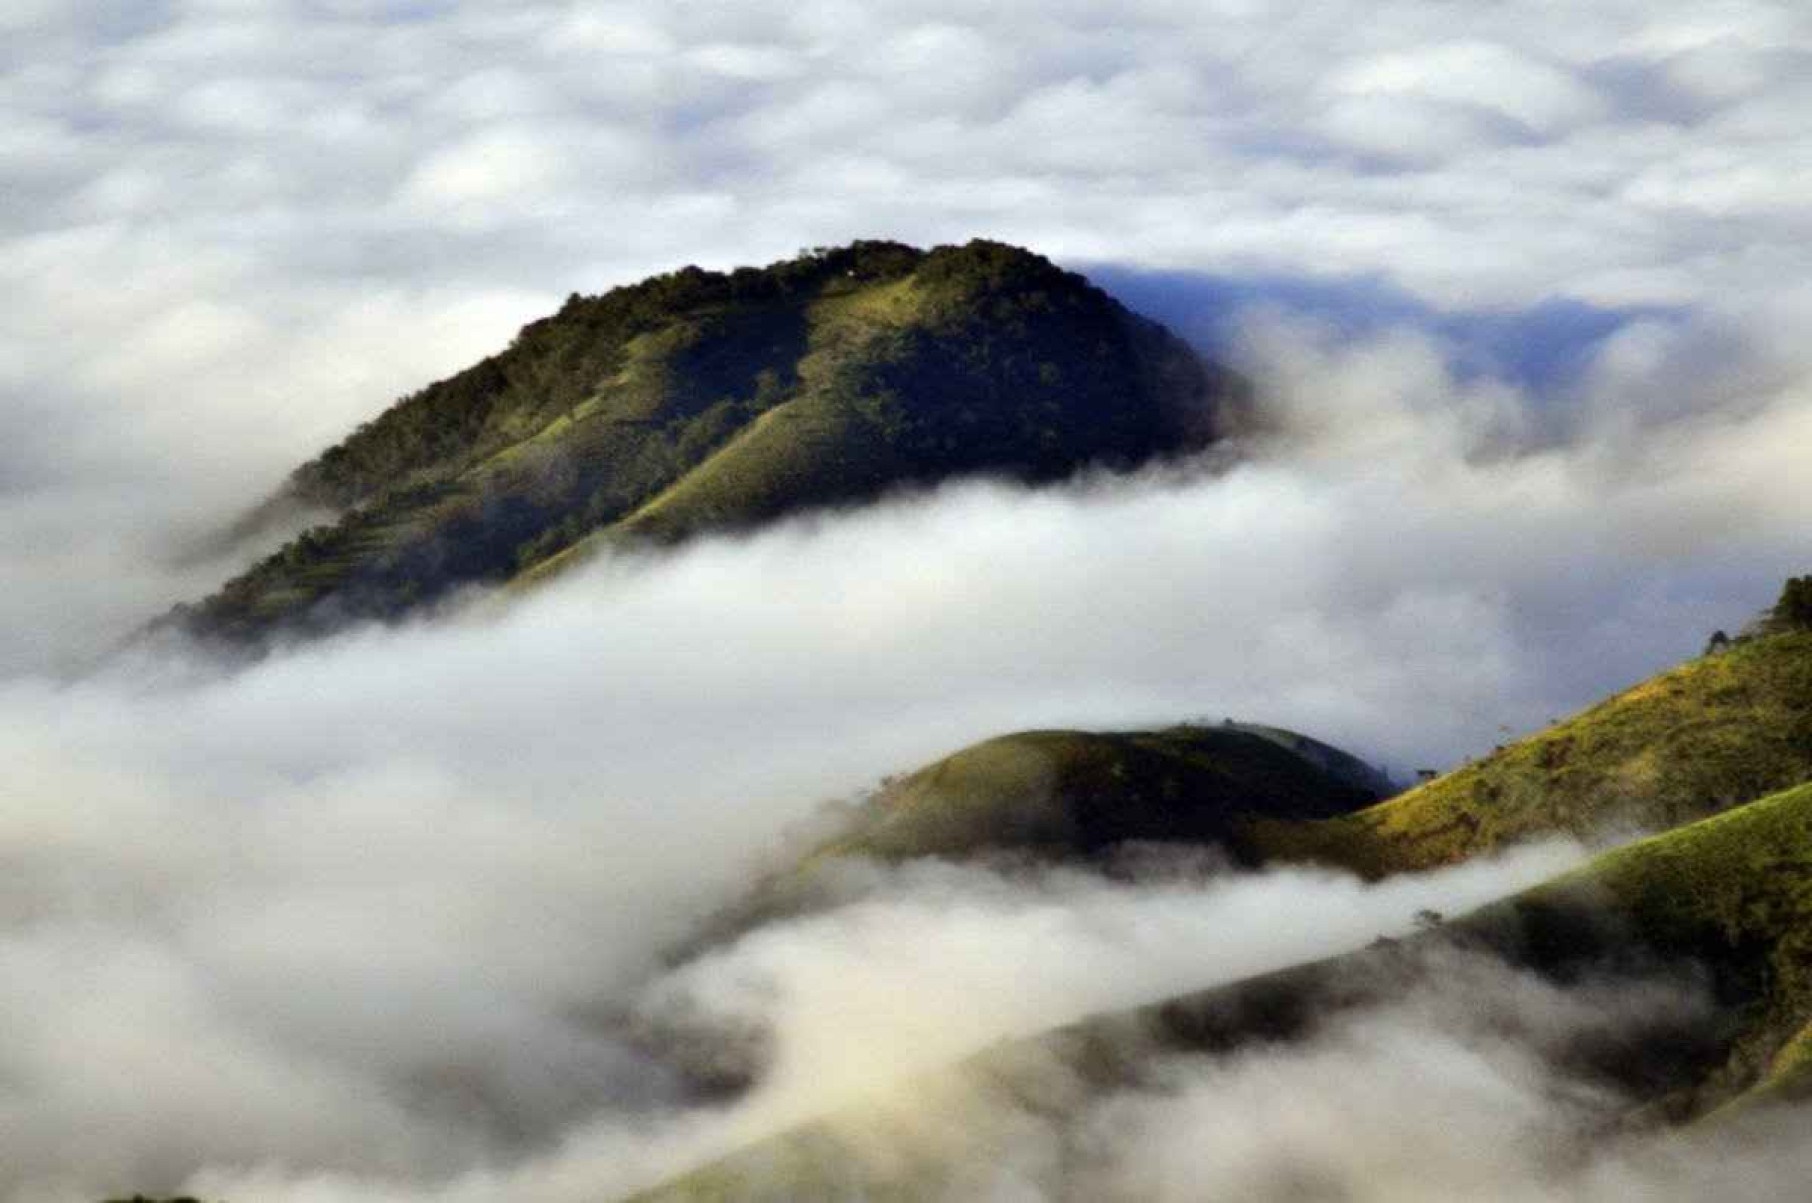  Pedra Redonda encoberta pela névoa é sensação no outono/inverno 